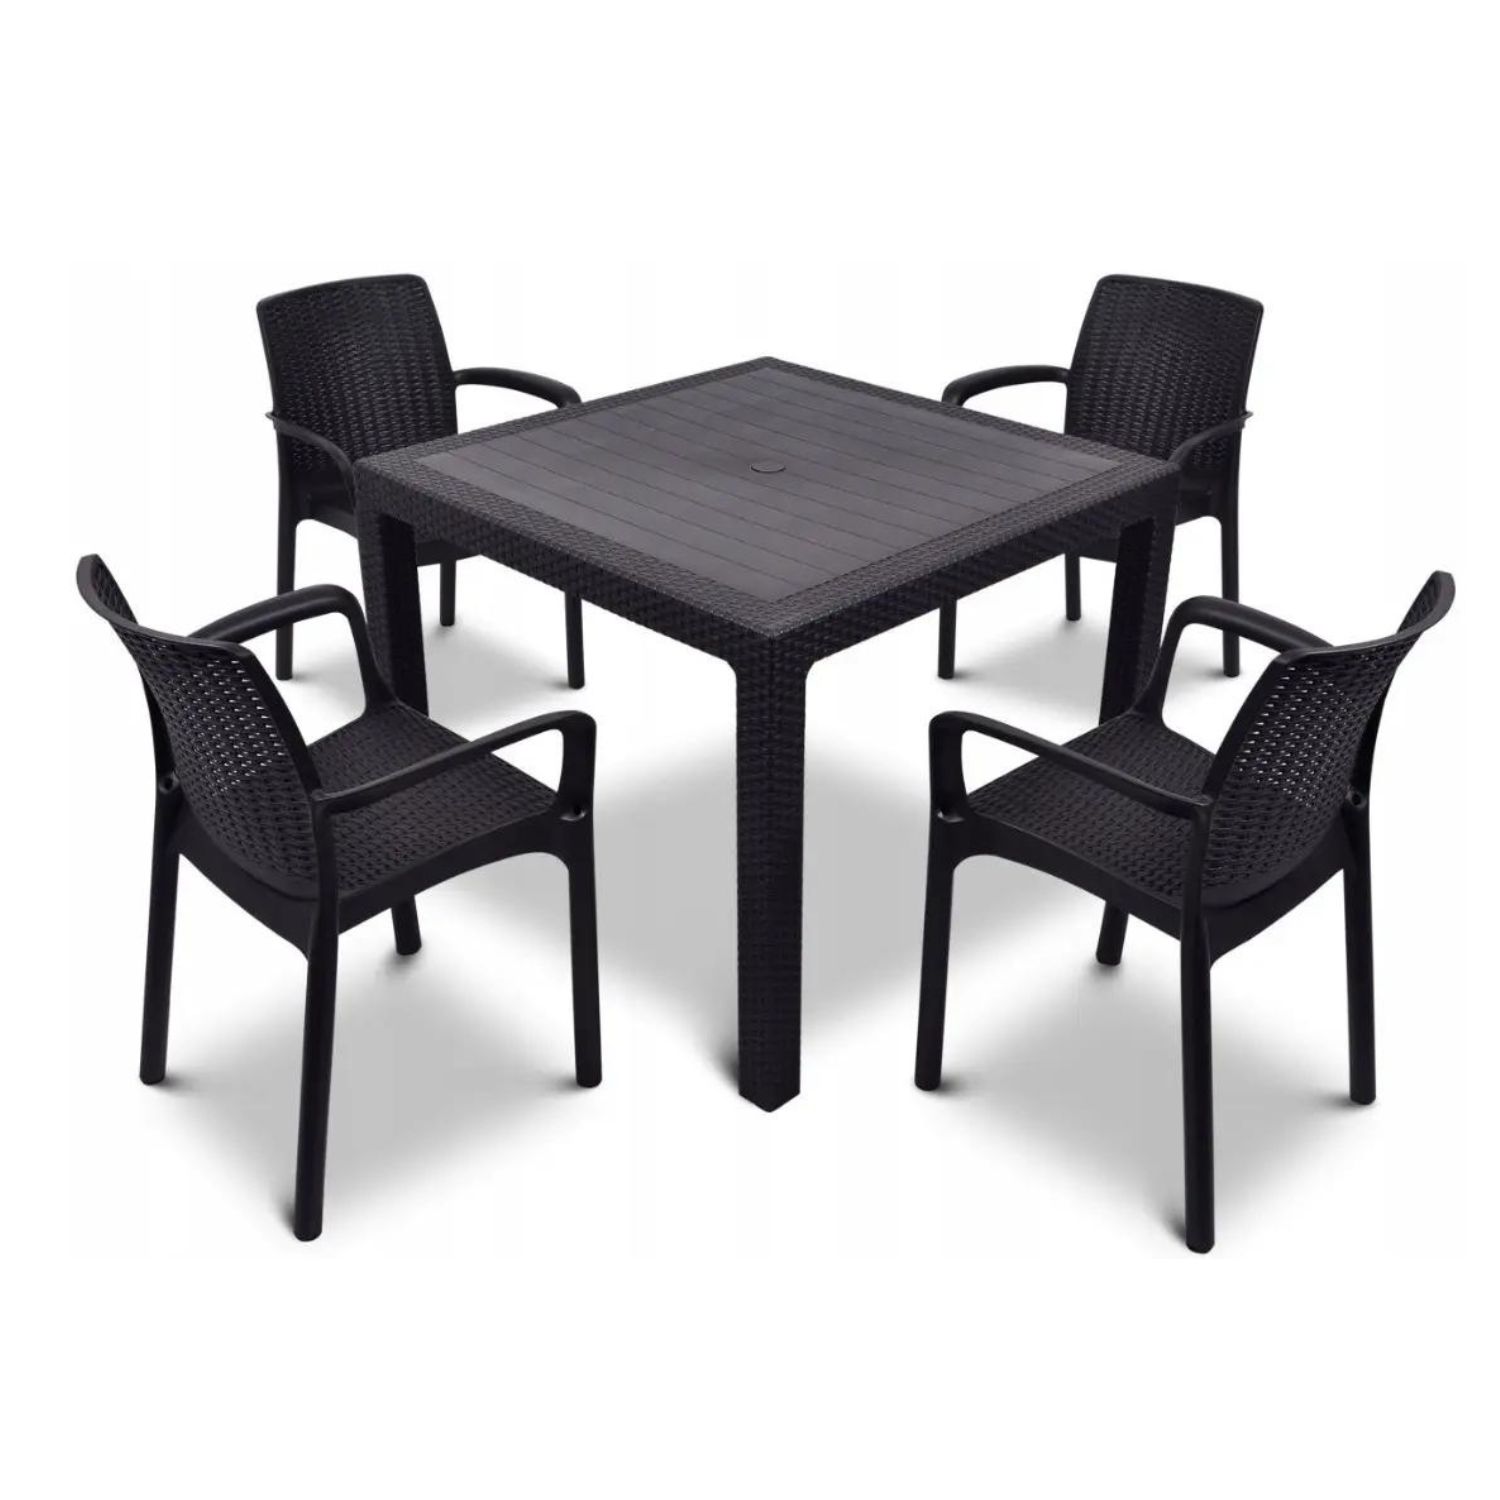 Комлпект мебели Elfplast RODOS RT0269 стол обеденный + 4 стула цвет коричневый